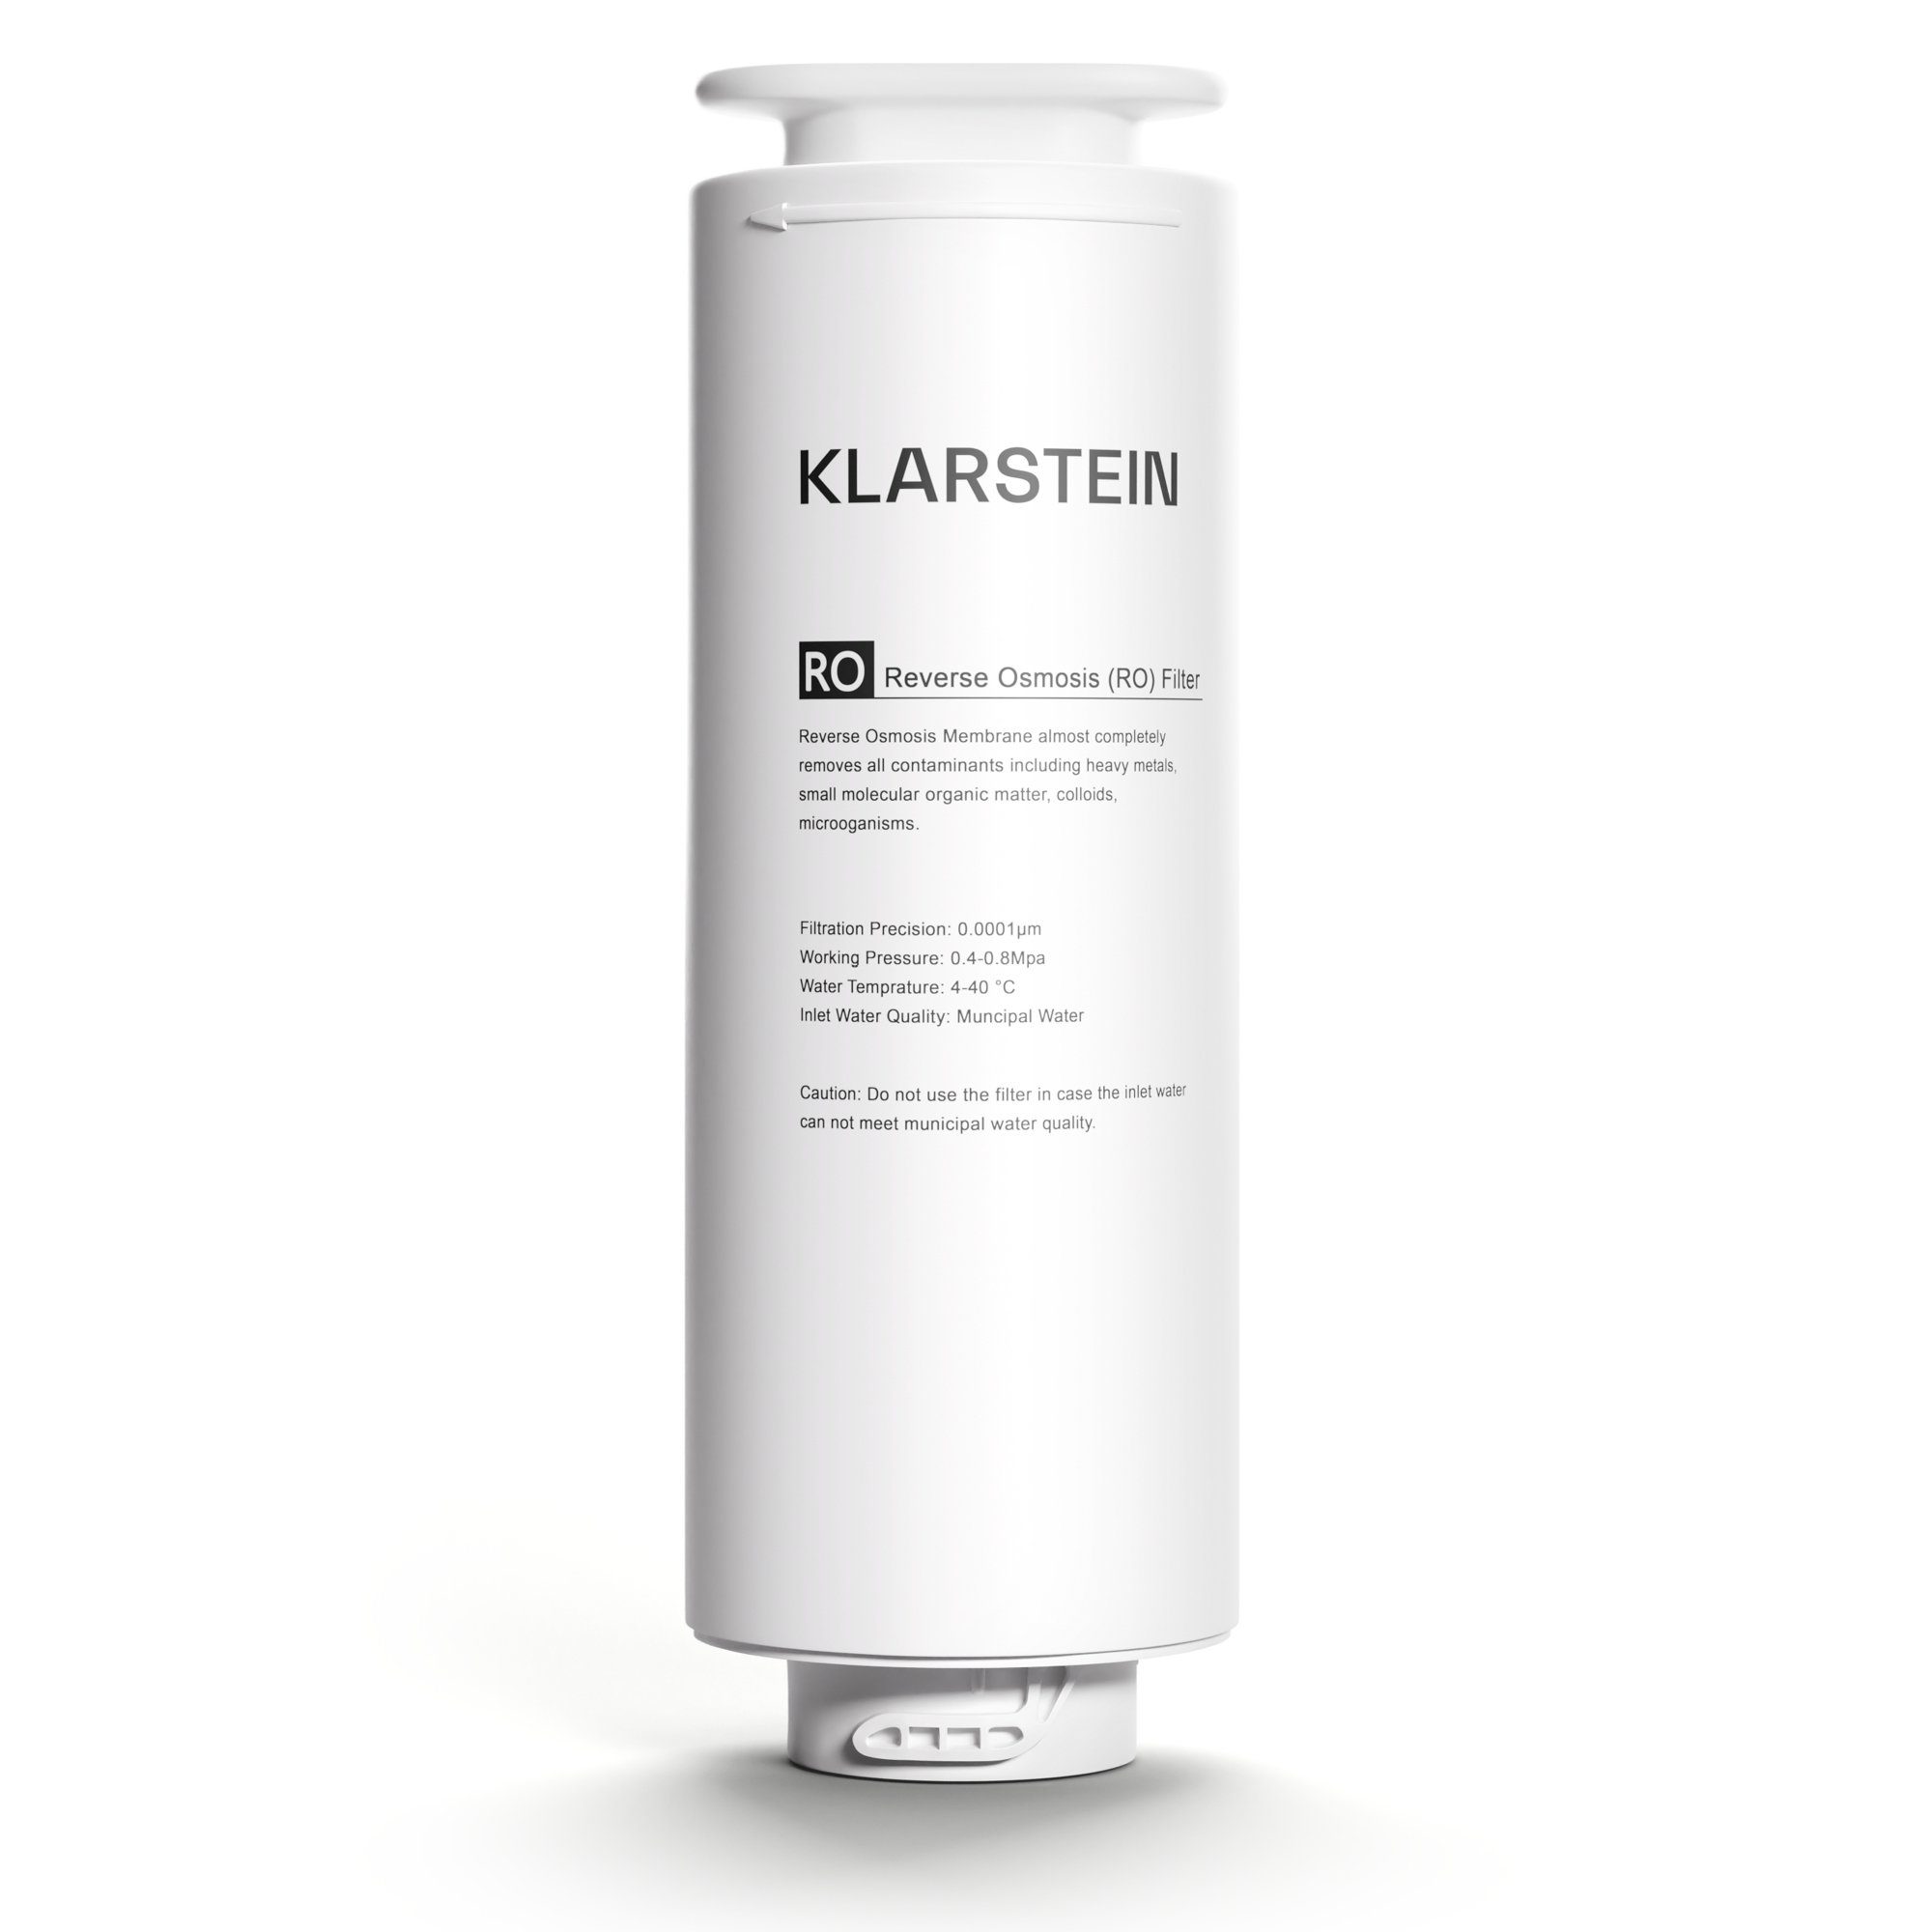 Klarstein Wasserfilter PureLine 400 RO-Filter Zubehör / Ersatz, Zubehör für kompatibel mit Klarstein PureLine 400 Wasserfiltersystem (10045506 & 10045507), Getränke Wasserfilter